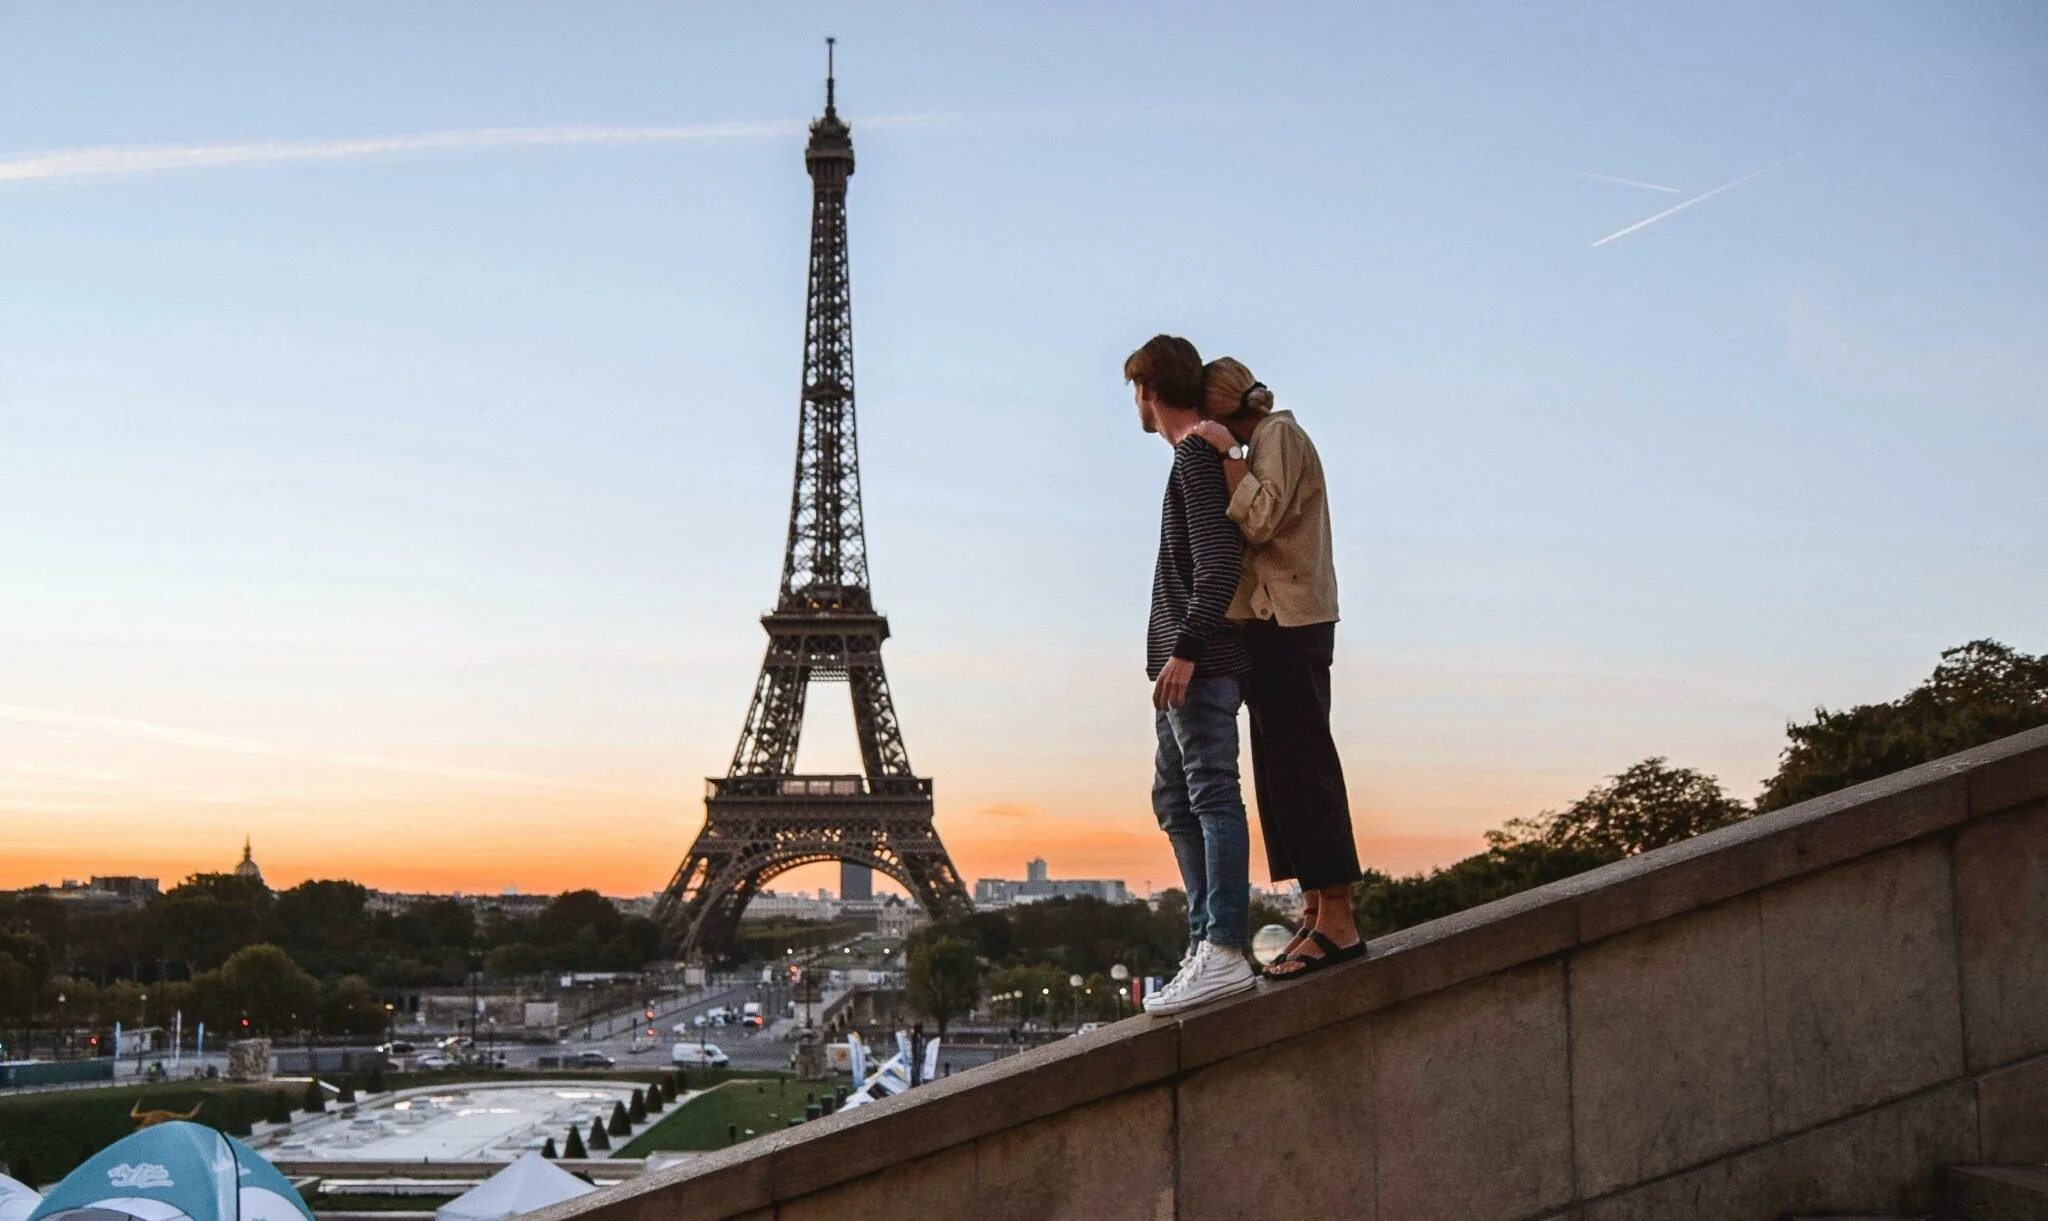 Нужны парижу деньги. На фоне Эйфелевой башни. Париж красивые места. Туризм во Франции. Париж туризм.